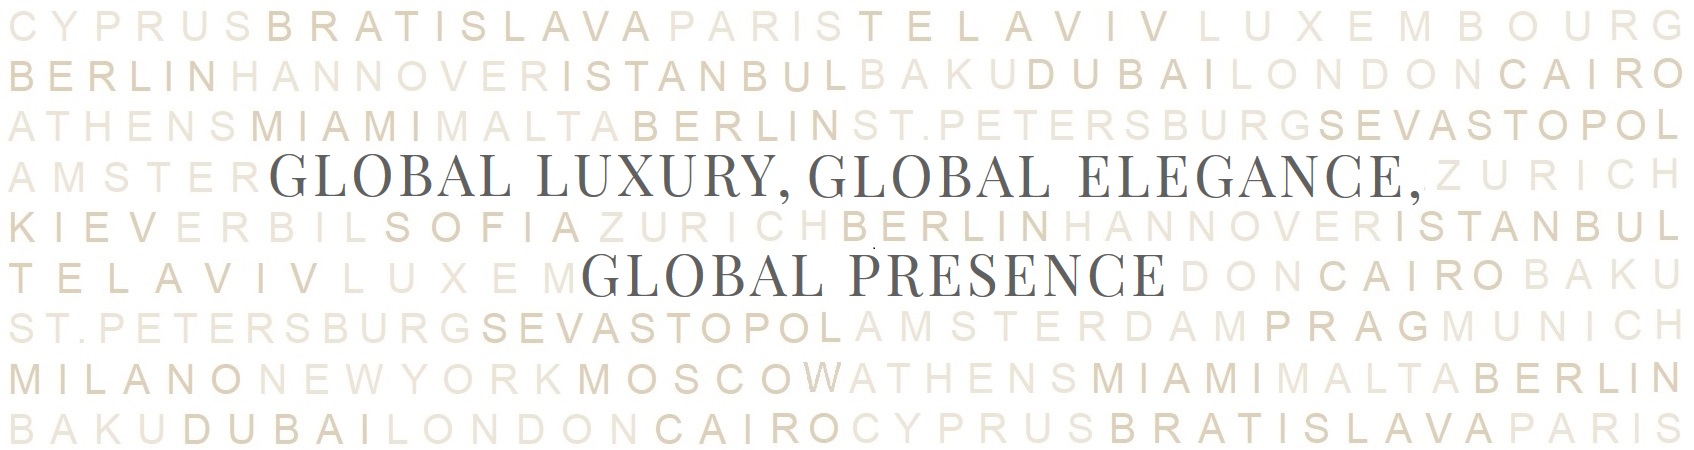 Global Luxury, Global Elegance, Global Presence.